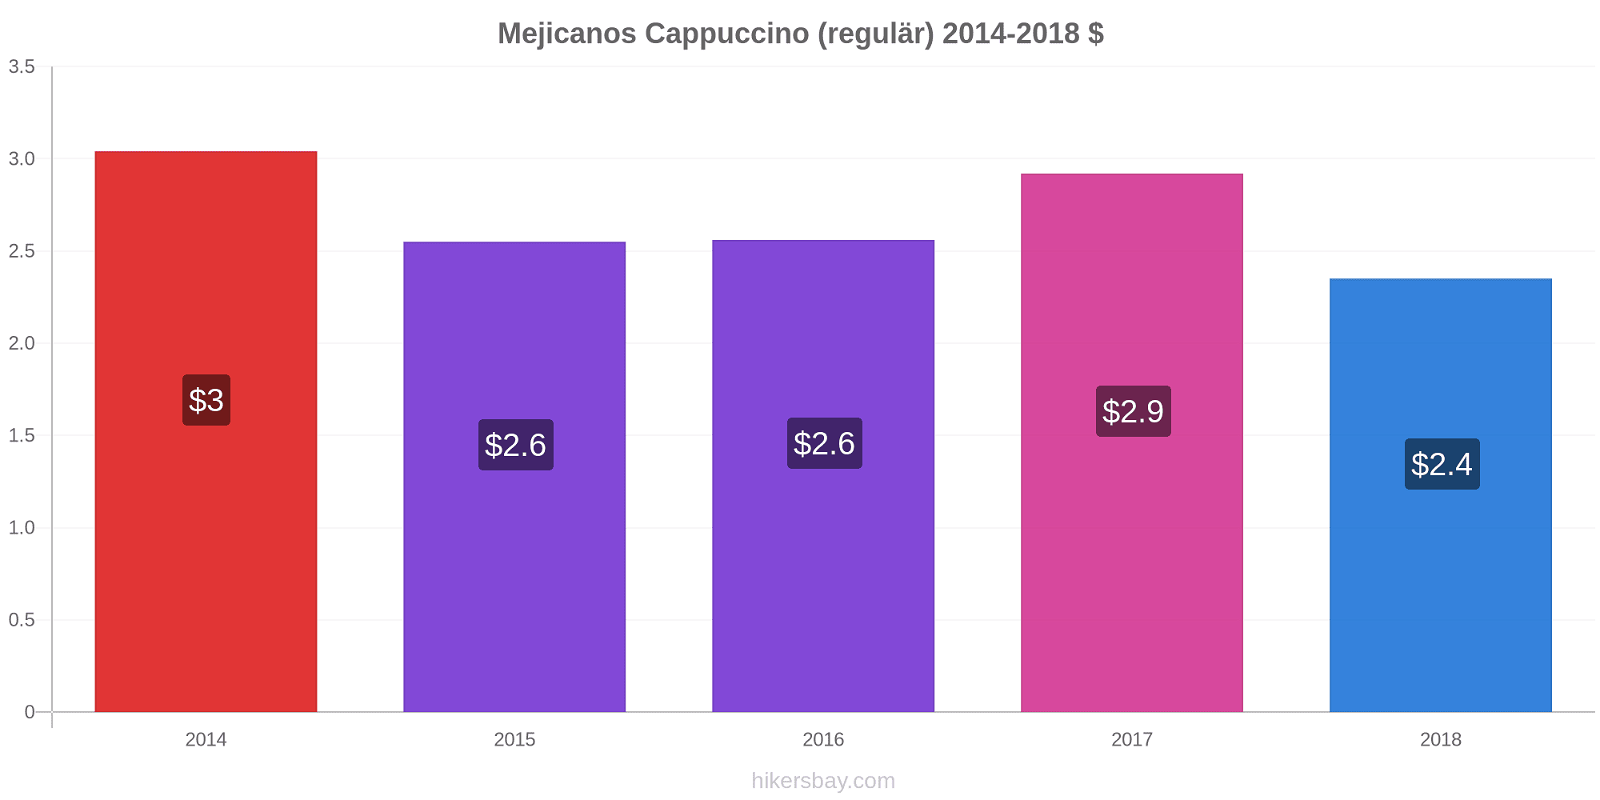 Mejicanos Preisänderungen Cappuccino (regulär) hikersbay.com